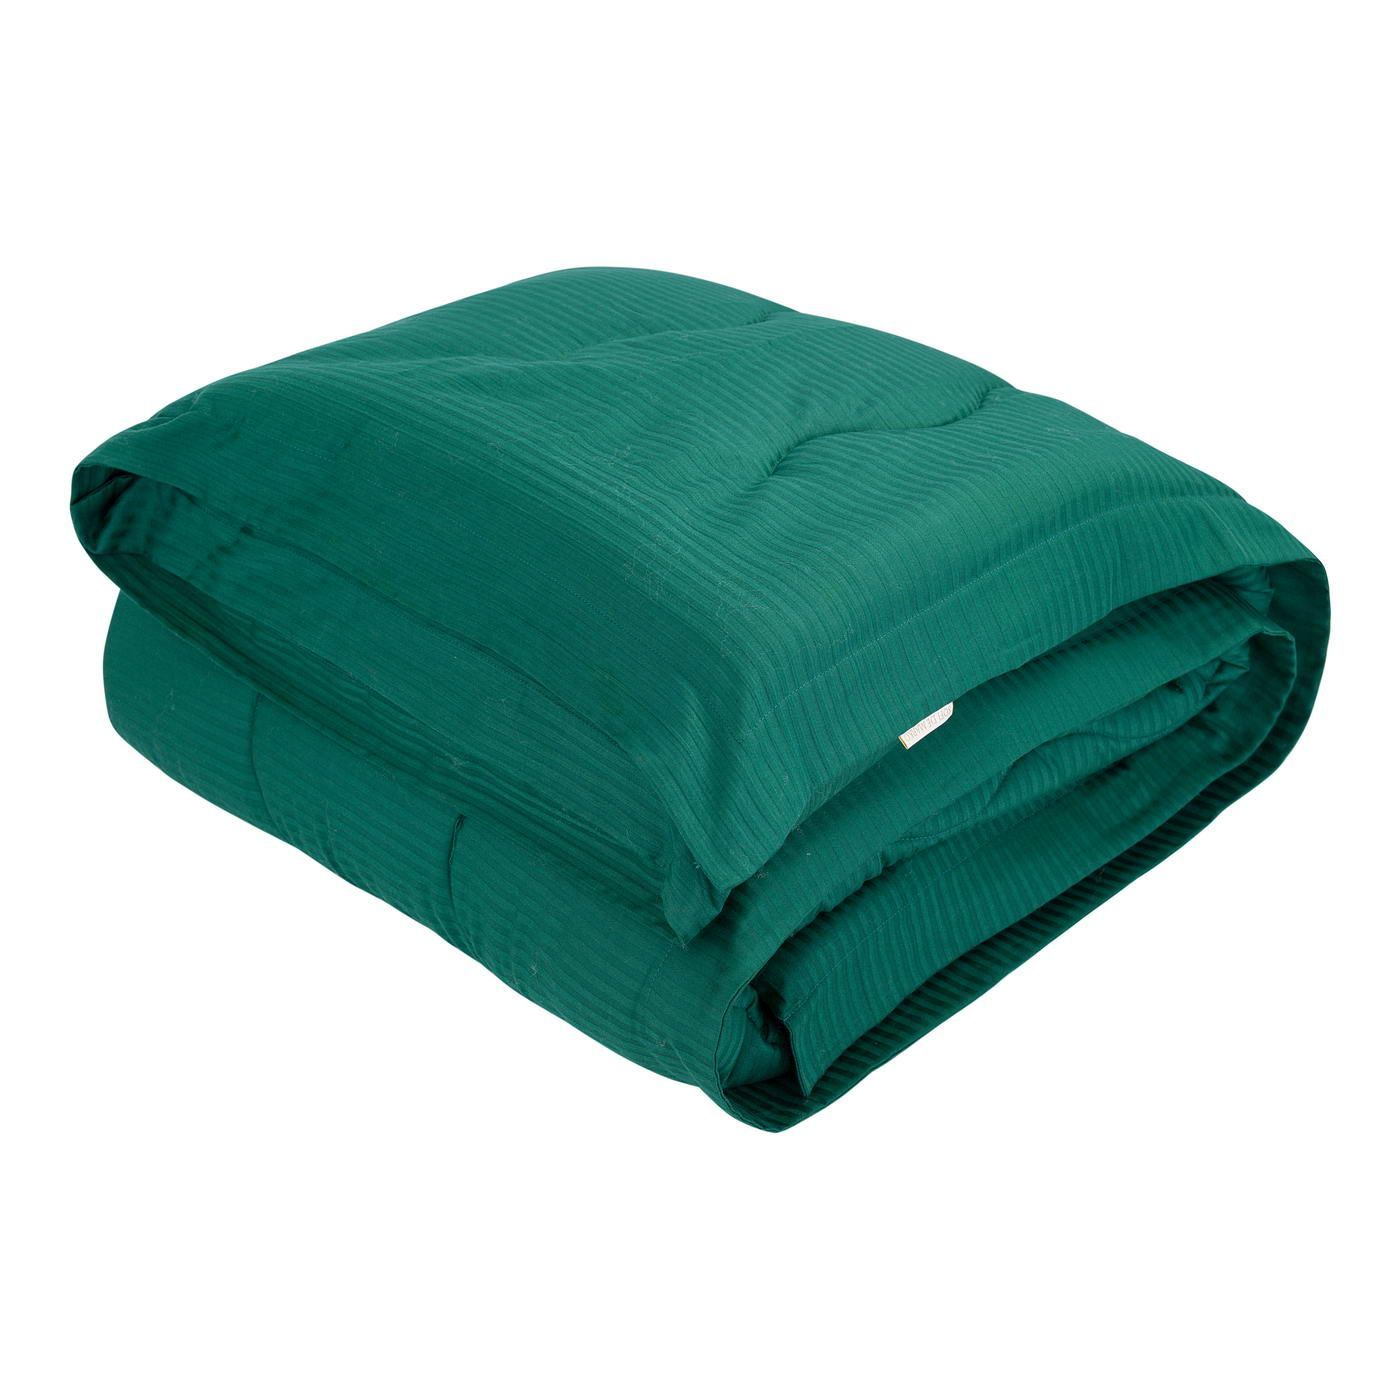 Одеяло-покрывало Тиффани цвет: малахитовый (155х220 см), размер 155х220 см sofi973246 Одеяло-покрывало Тиффани цвет: малахитовый (155х220 см) - фото 1